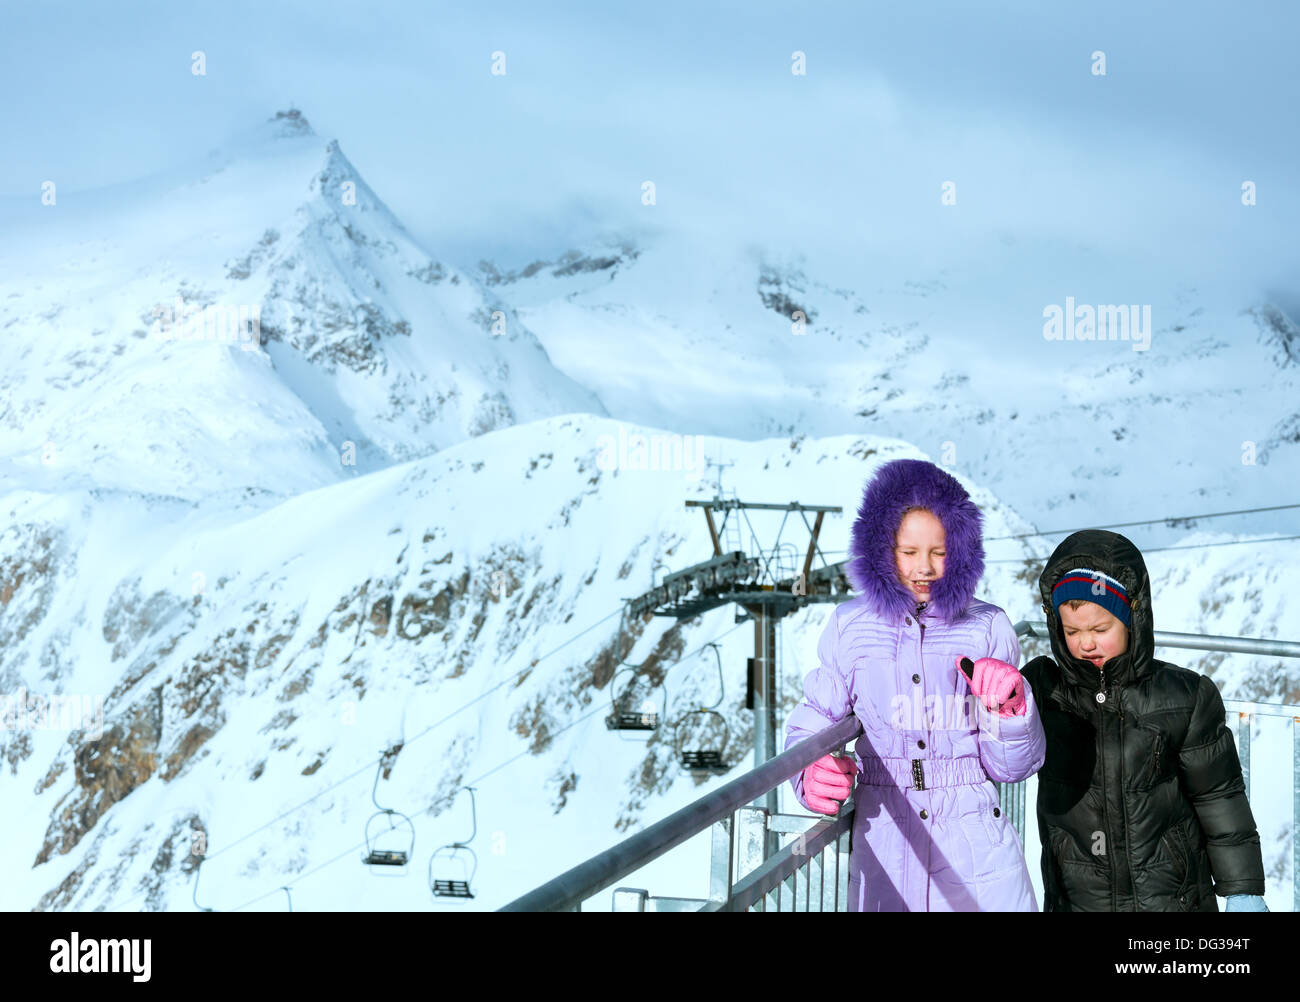 Kinder Ski Station oben und morgen winter Berglandschaft. Skigebiet Molltaler Gletscher, Kärnten, Österreich. Stockfoto